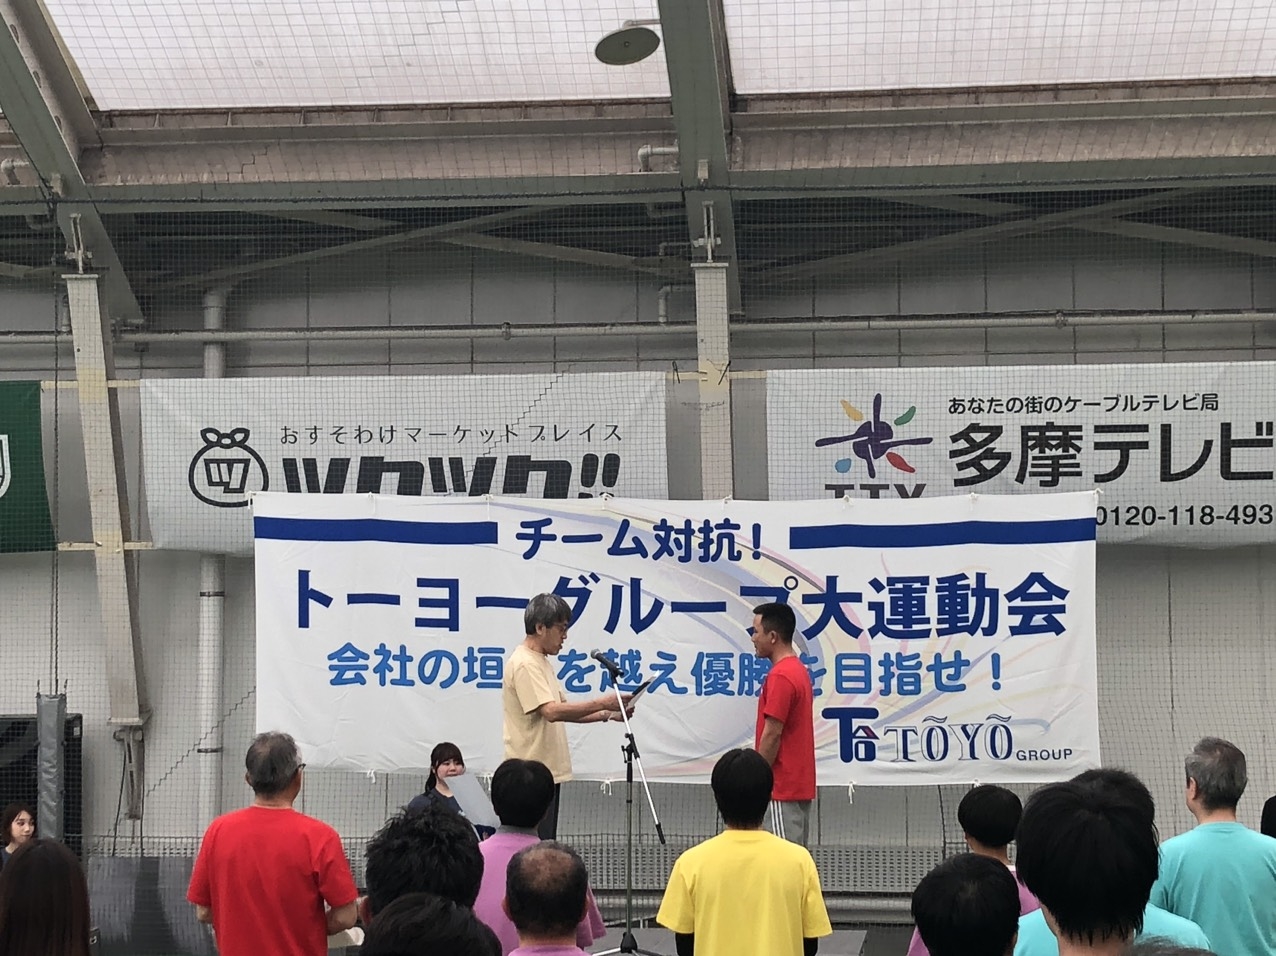 Ngày hội thể thao Tập đoàn TOYO được tổ chức tại Nhật Bản